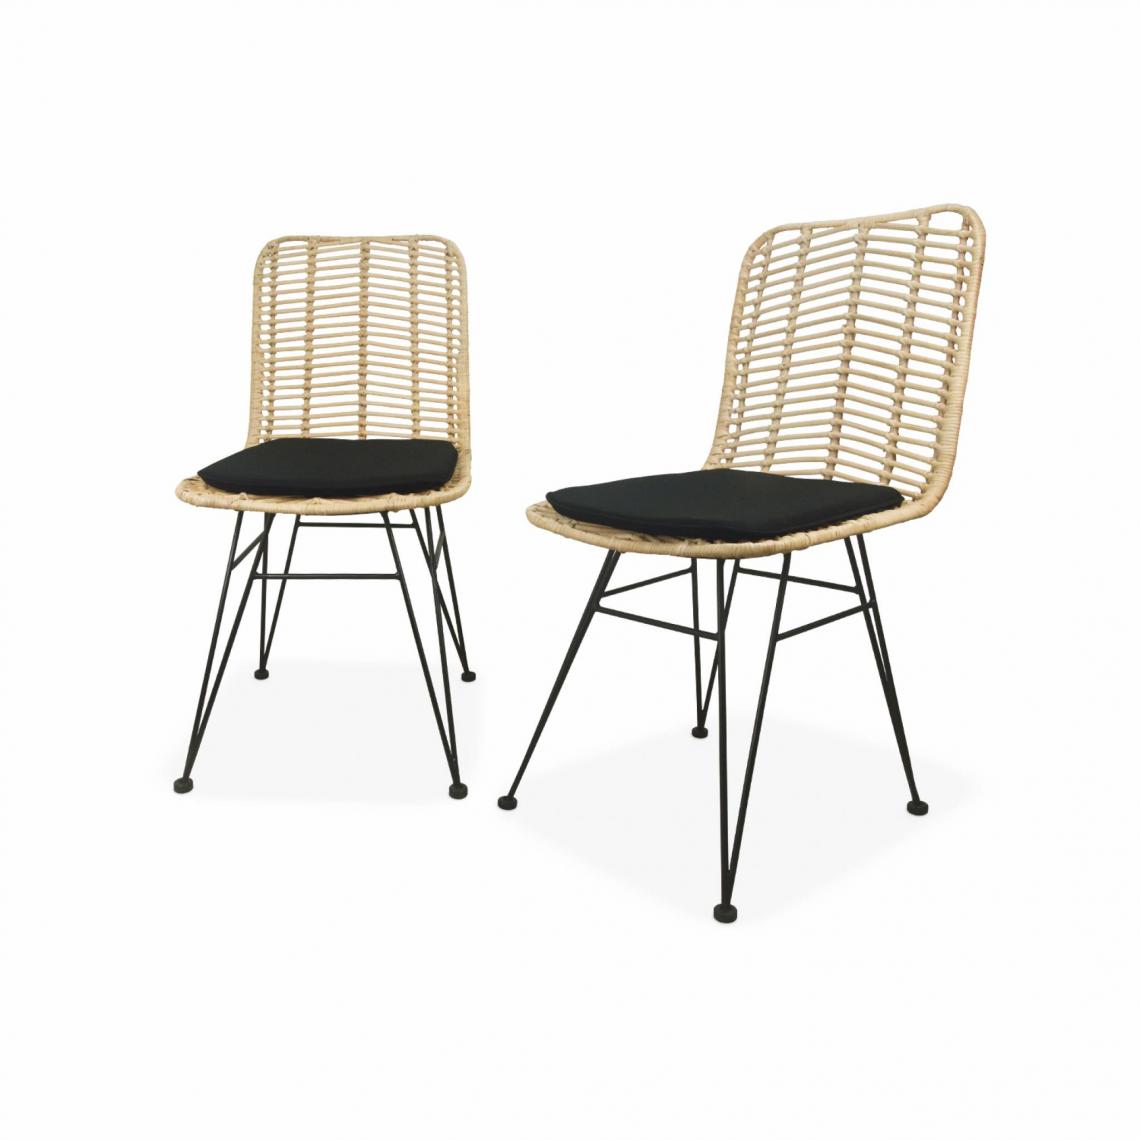 Alice'S Garden - Deux chaises en rotin naturel et métal, coussins noirs l Alice's Garden - Chaises